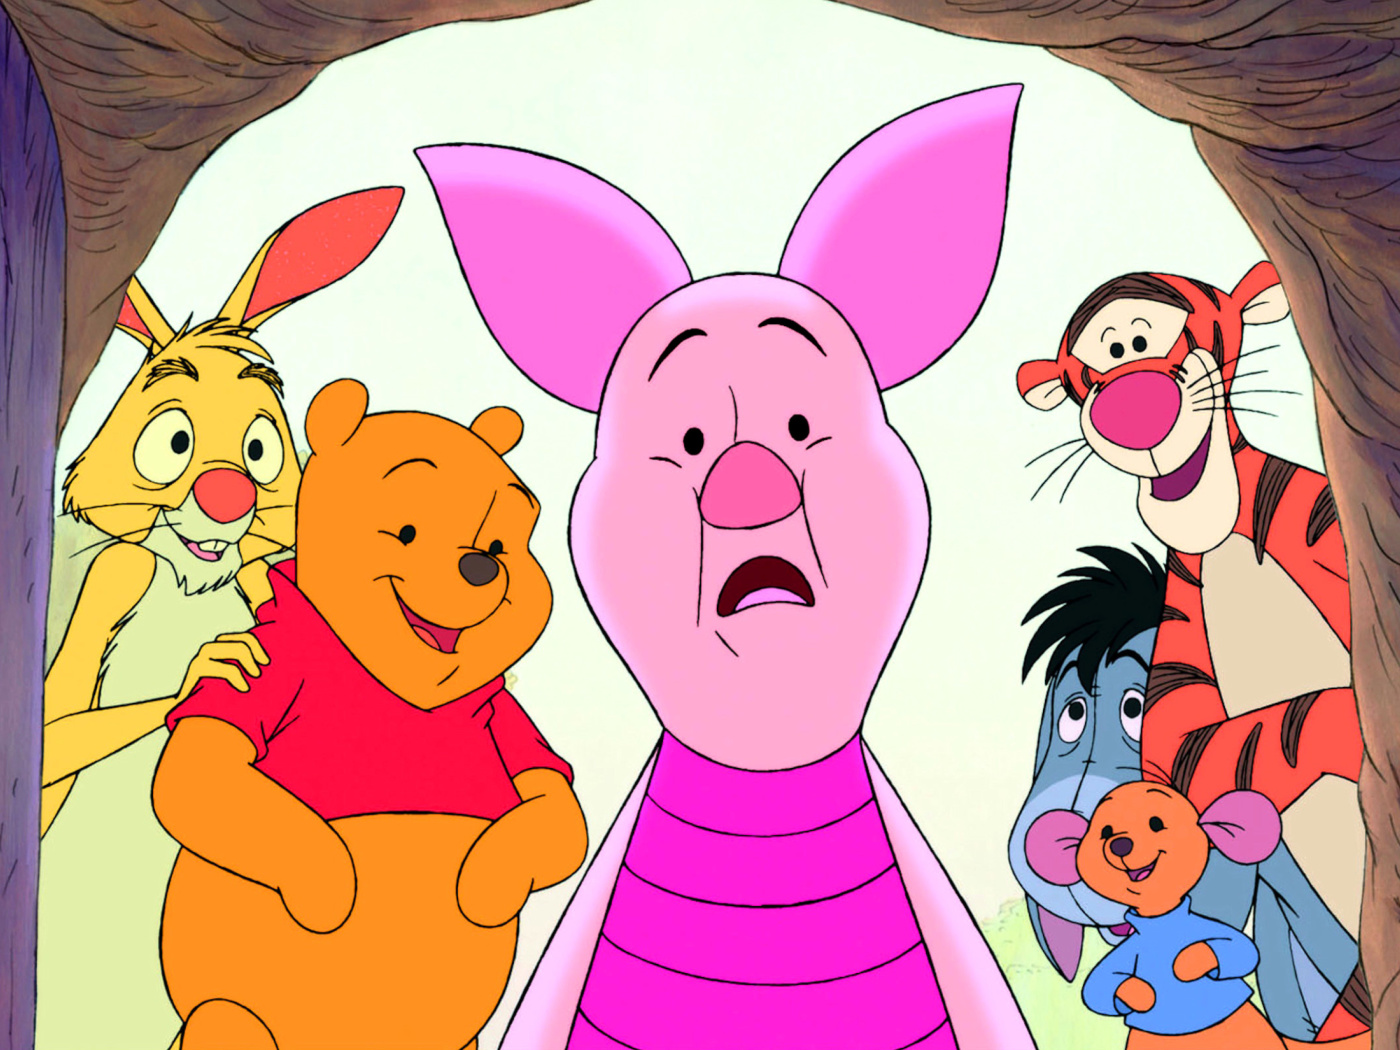 Обои Winnie the Pooh with Eeyore, Kanga & Roo, Tigger, Piglet 1400x1050